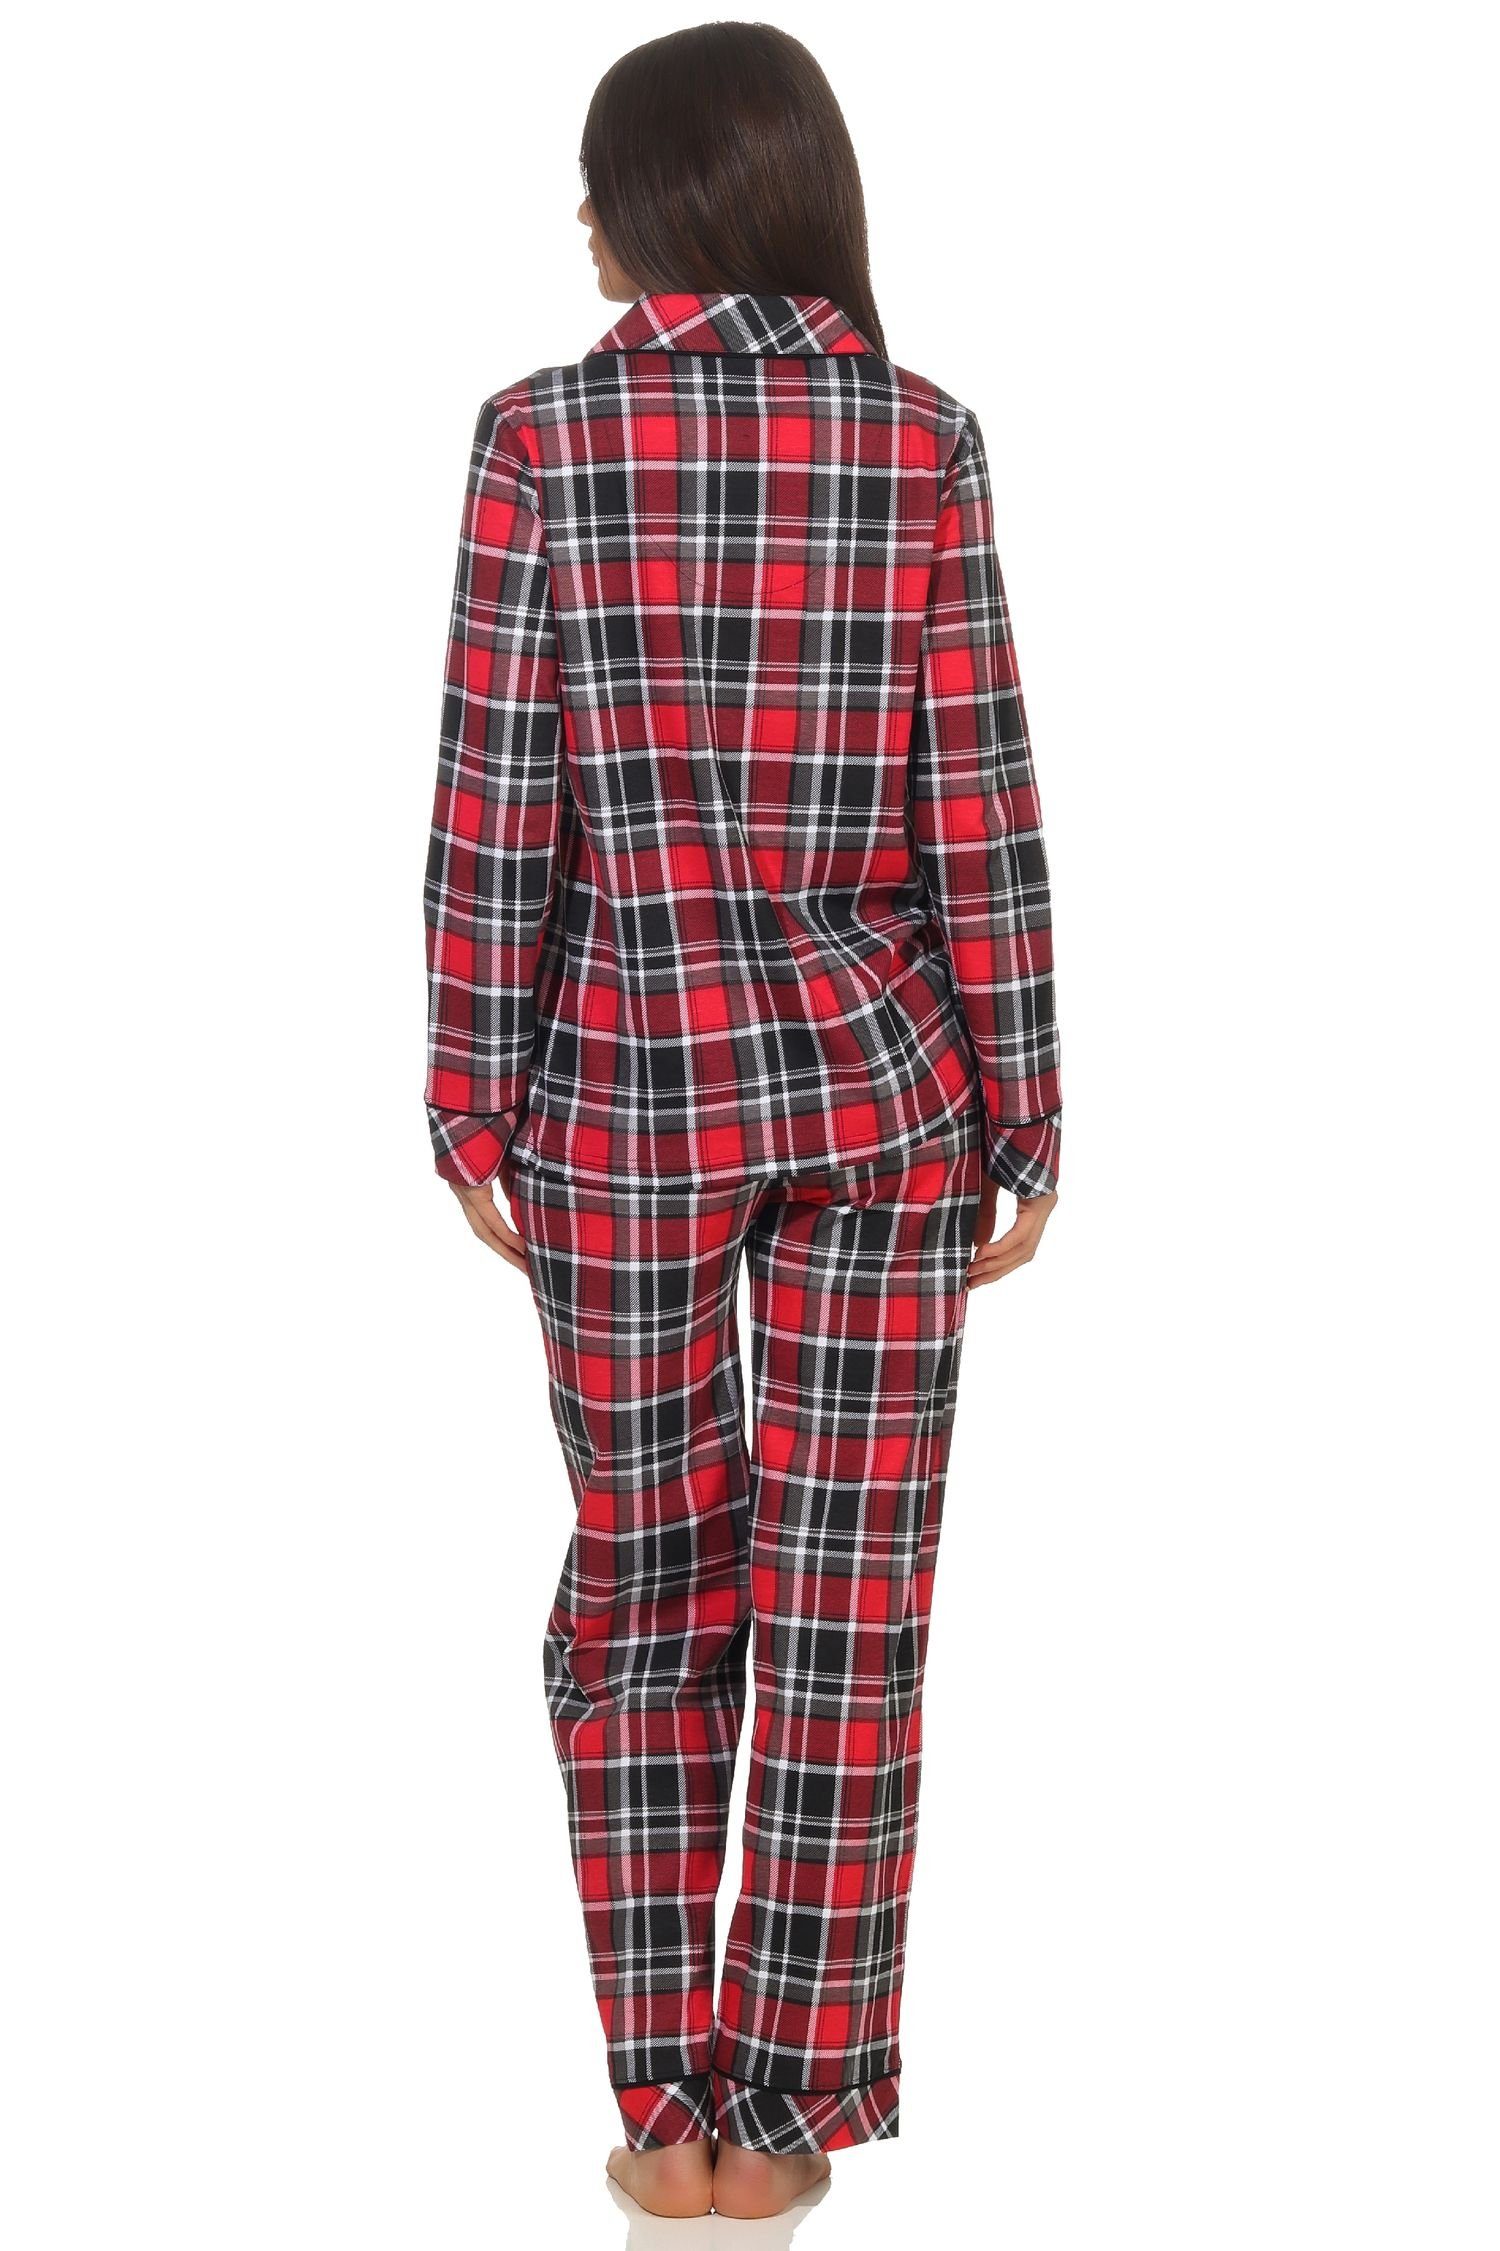 Karo Optik in Jersey Pyjama Damen Normann Single zum durchknöpfen Qualität in Pyjama